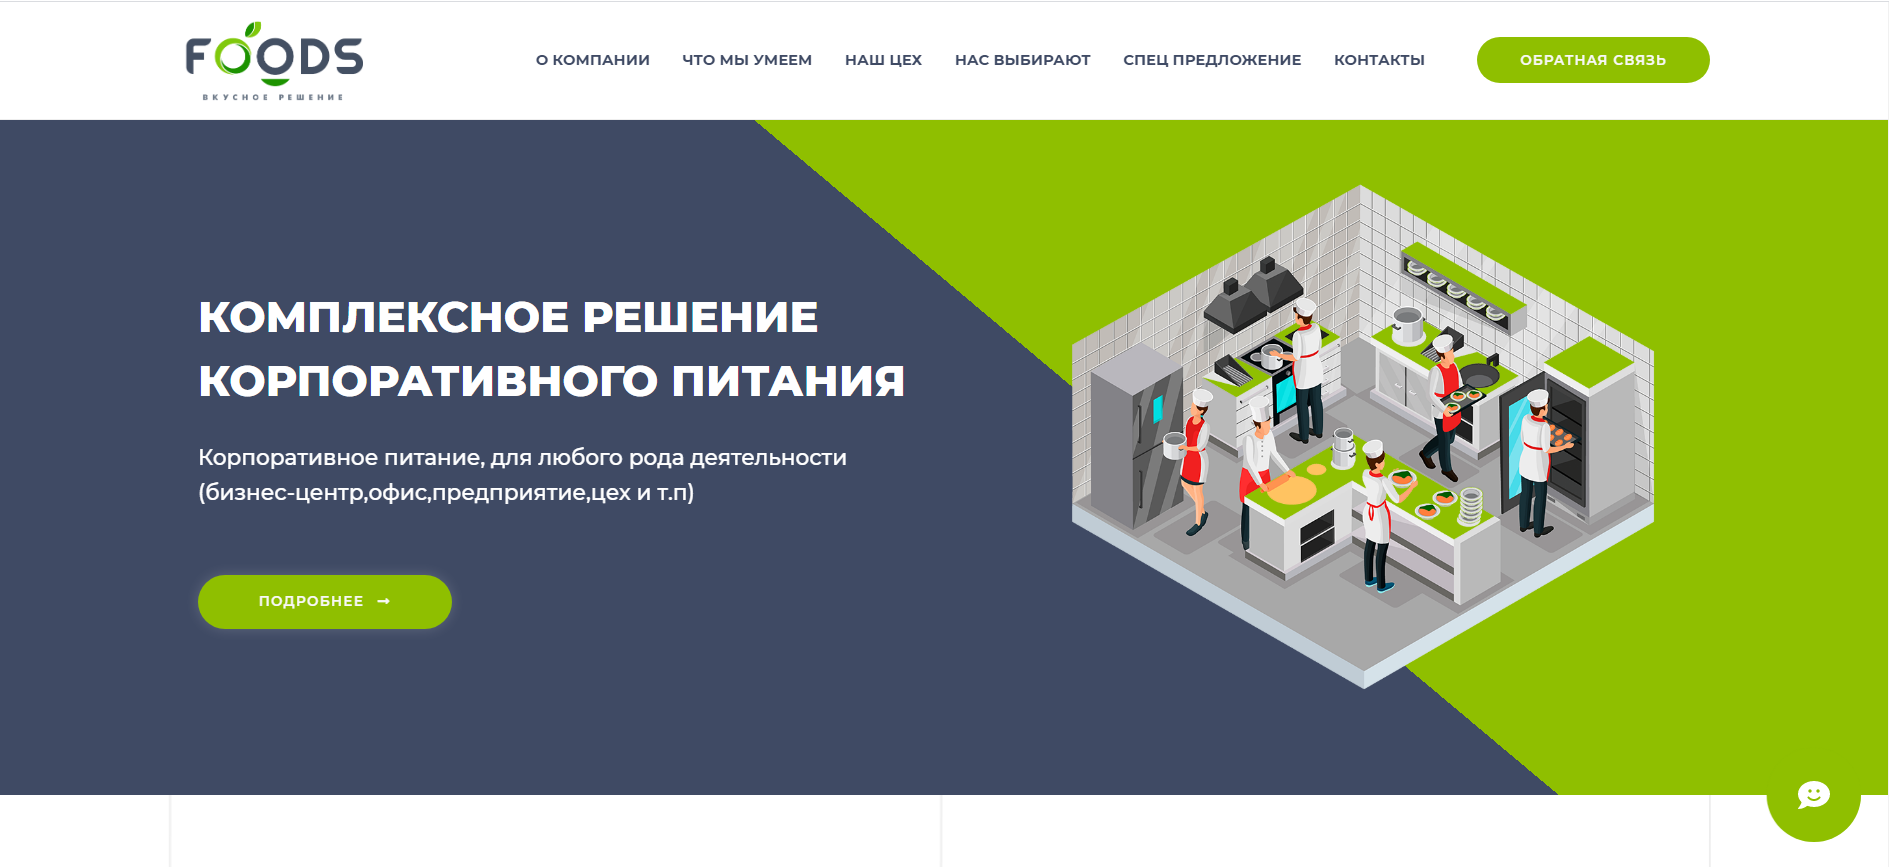 Разработка сложных сайтов в Алматы. Создание портала